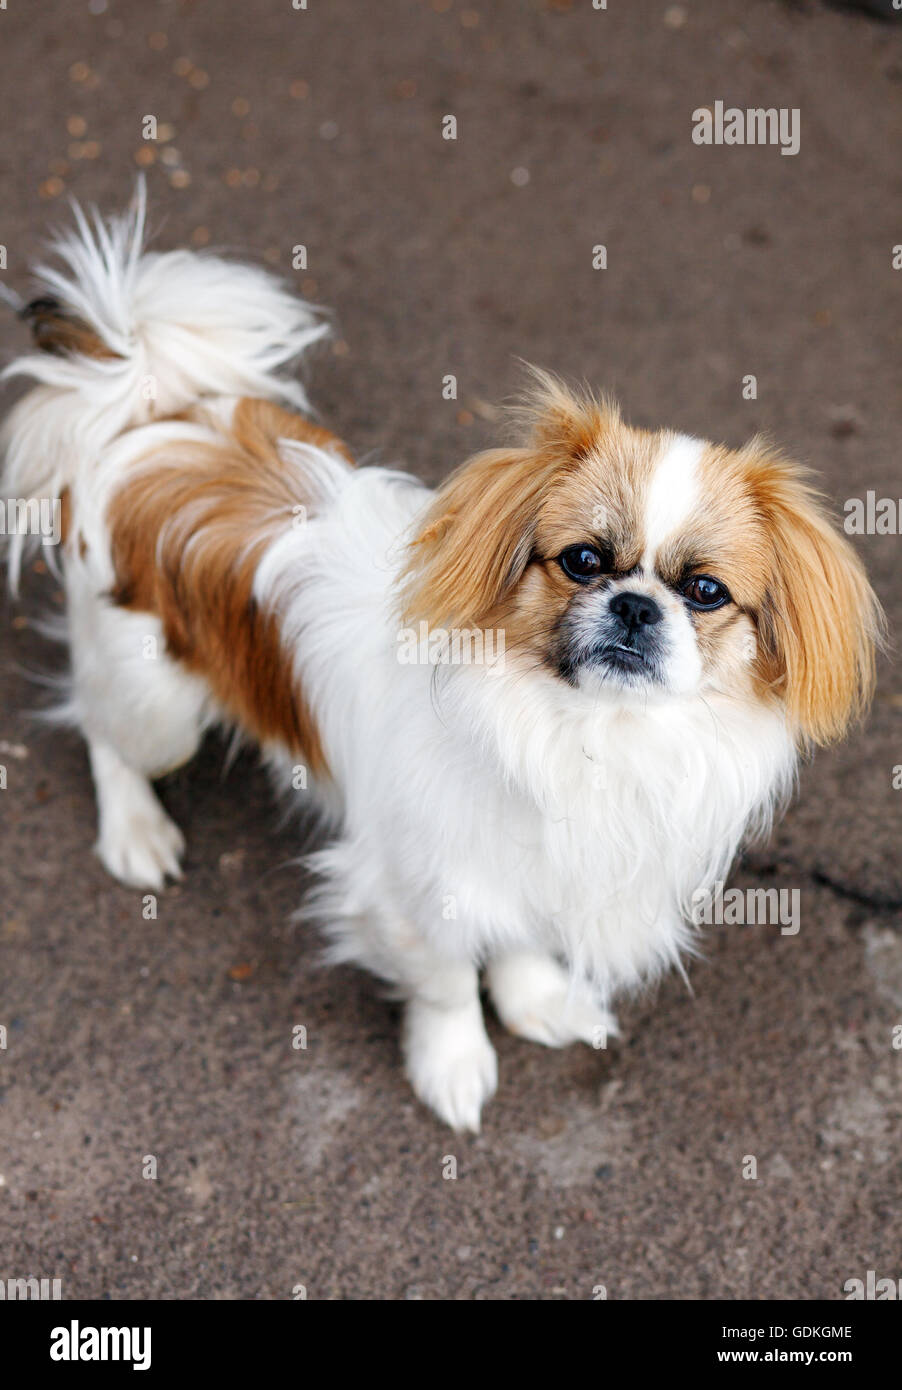 Funny red-haired pekingese dog Stock Photo